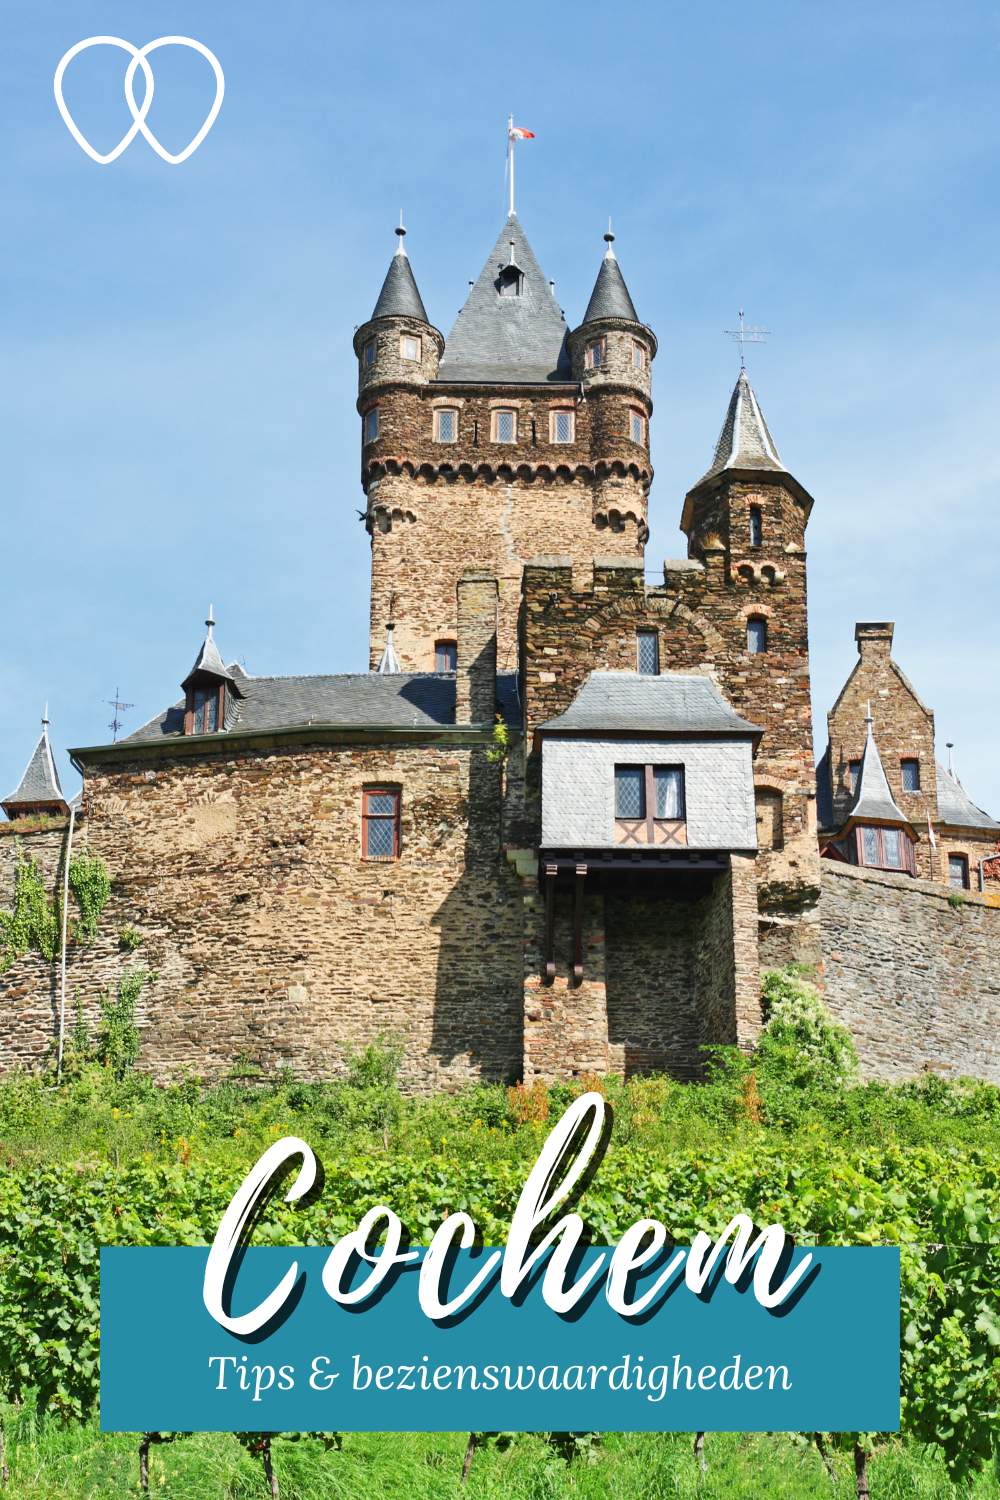 Cochem, Duitsland: wat te doen in Cochem? Ontdek de leukste bezienswaardigheden in Cochem | Mooistestedentrips.nl